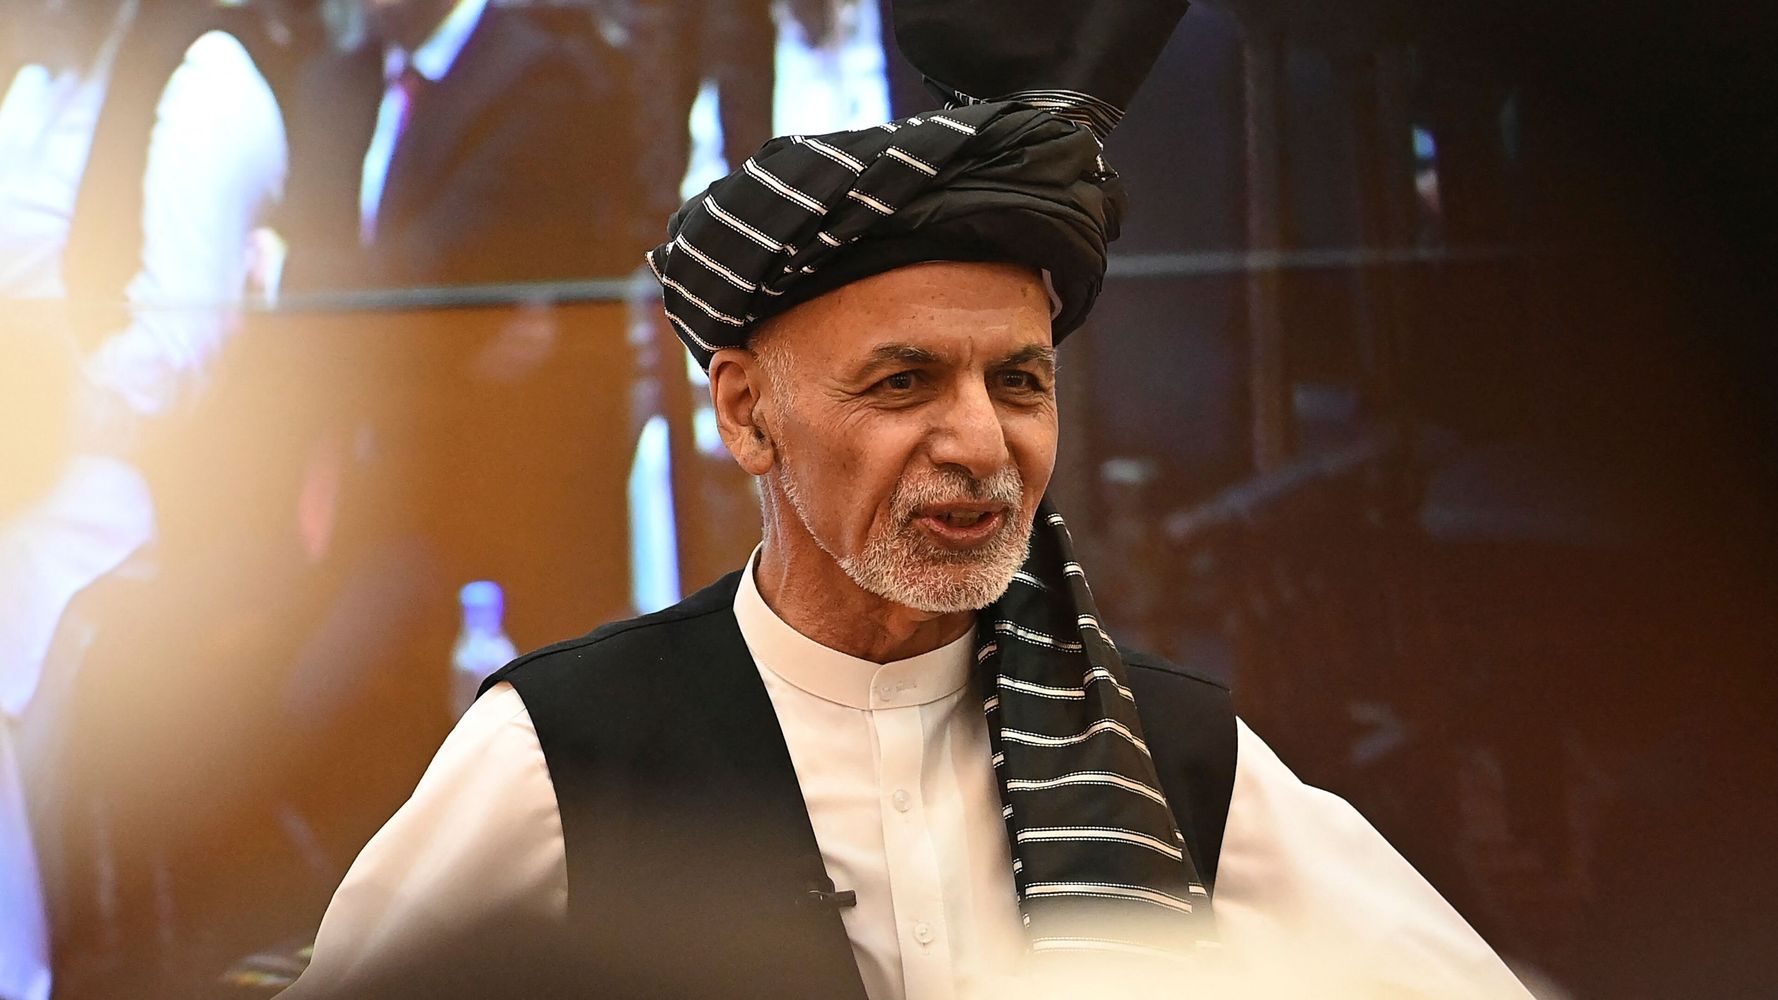 Afghan President Resurfaces 1,000 Miles Away